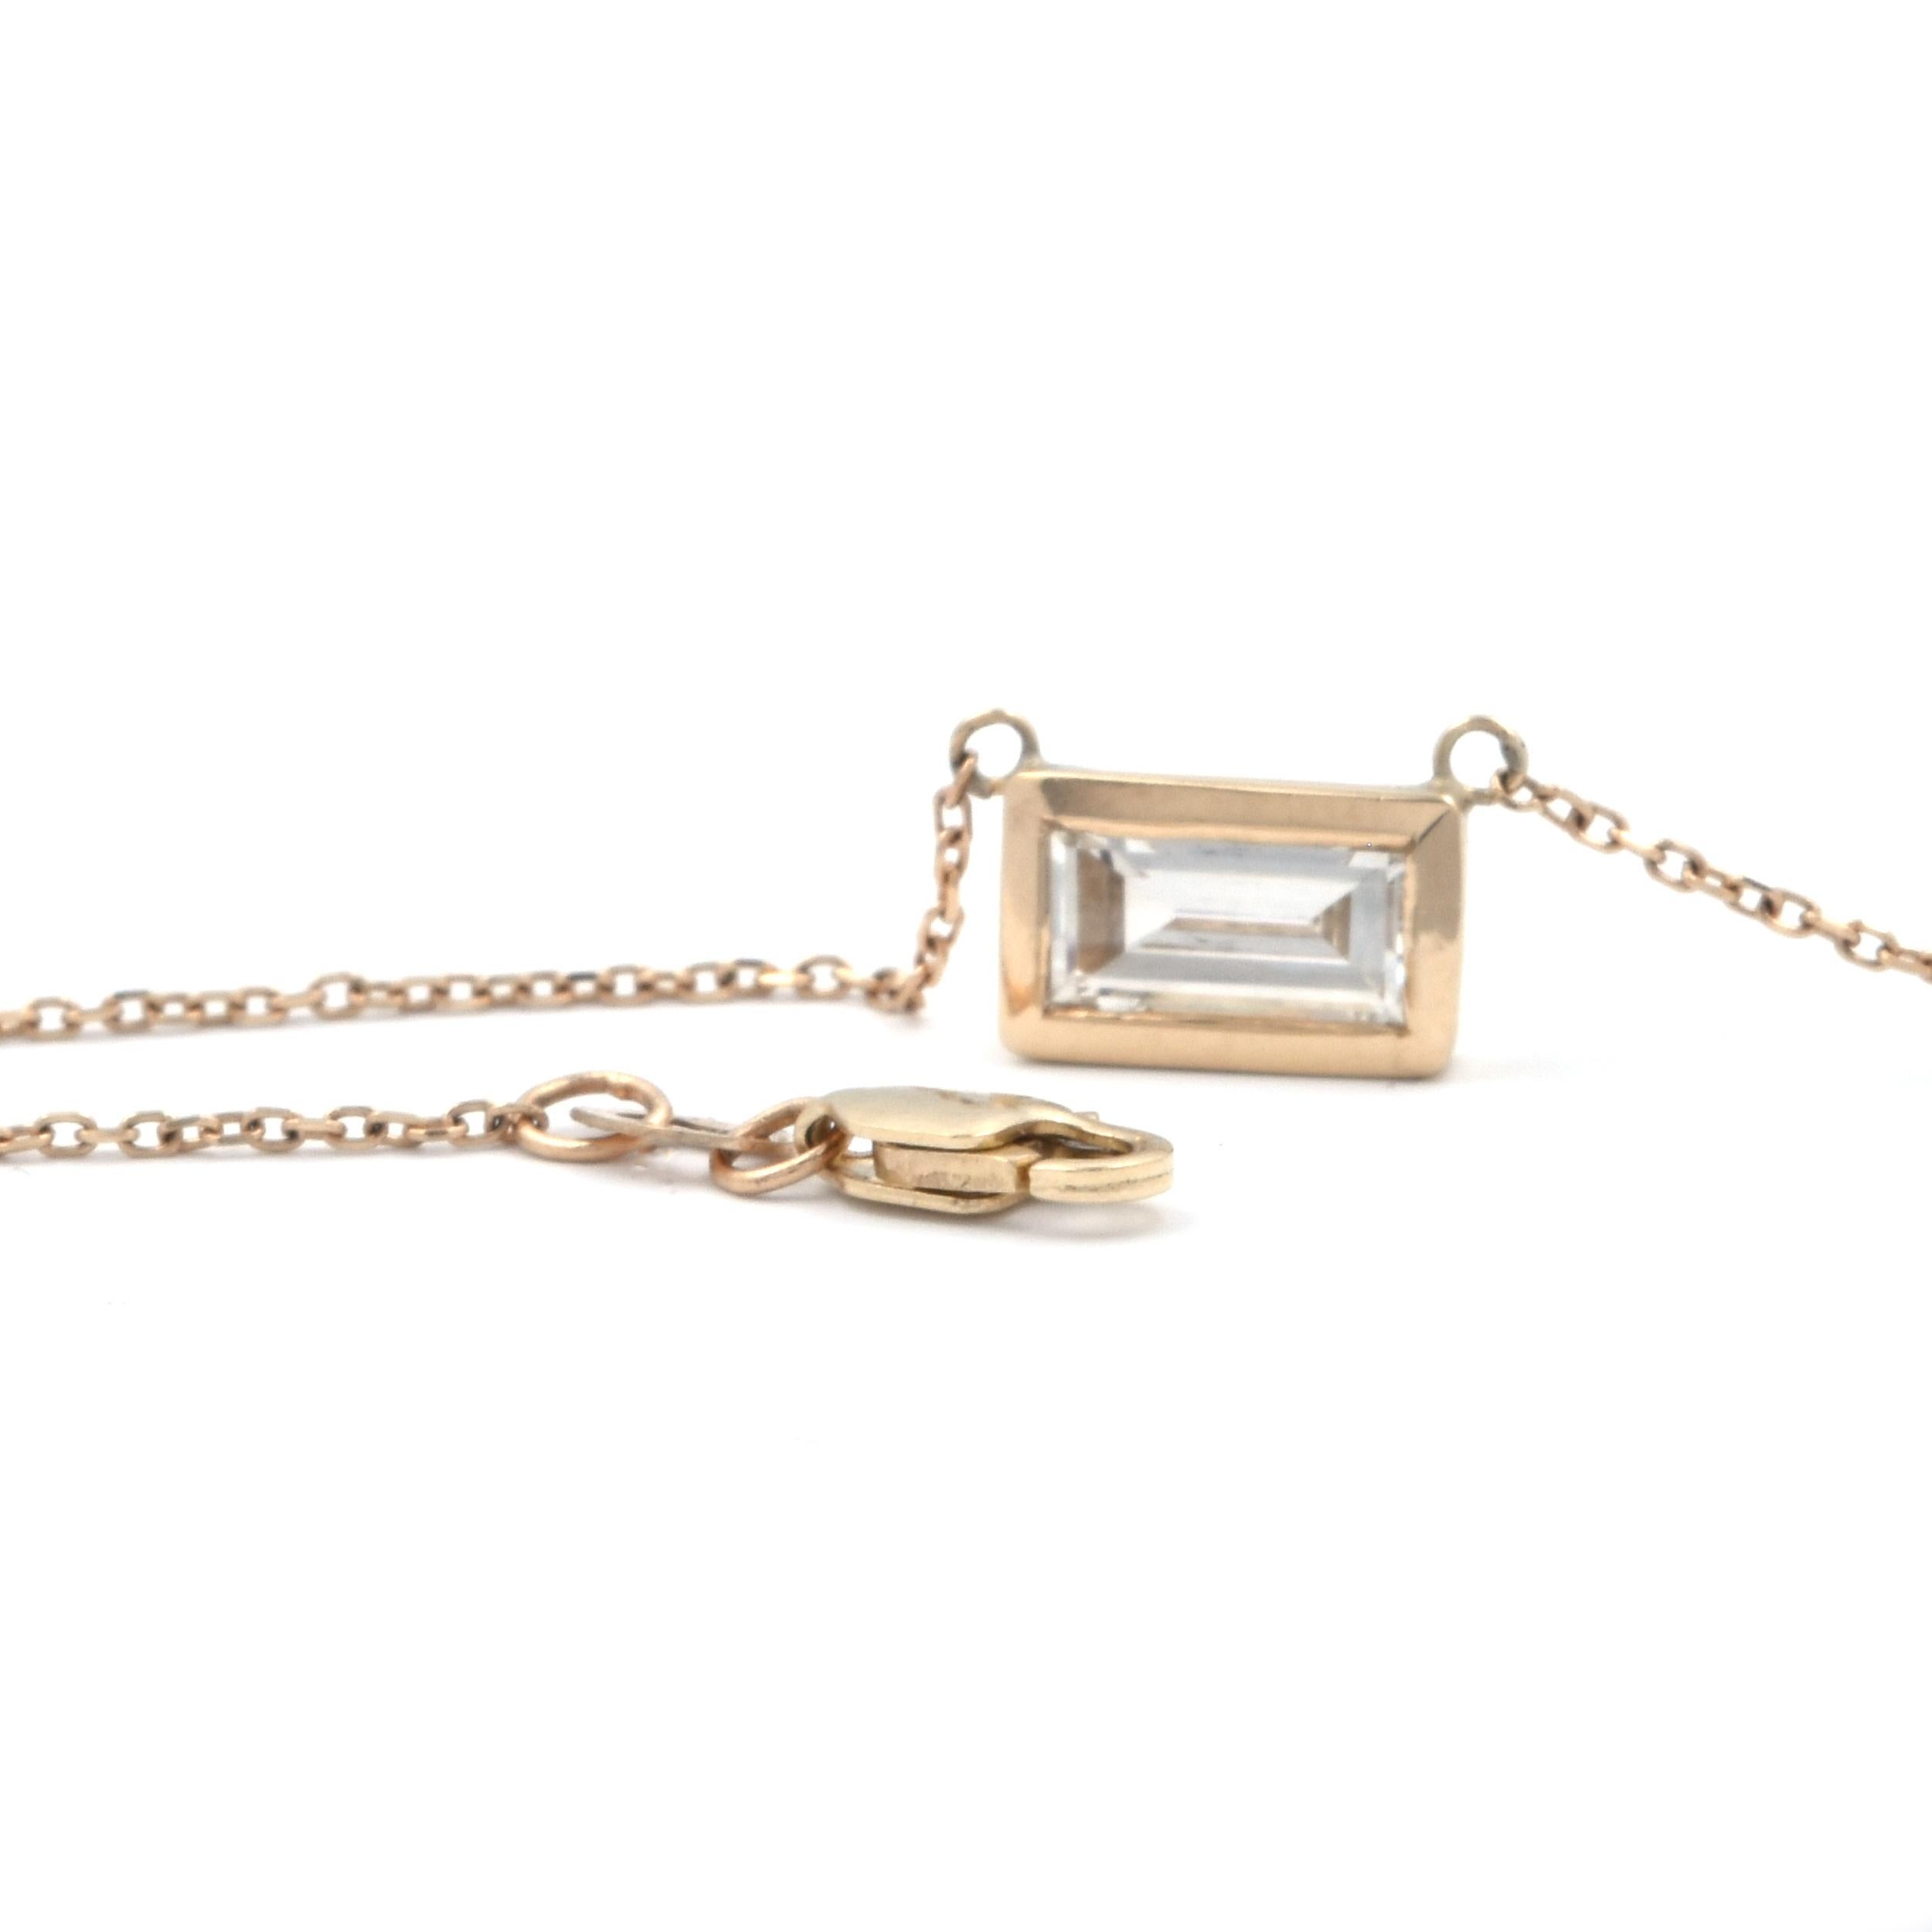 Emerald Cut 14 Karat Yellow Gold Bezel Set Diamond Necklace